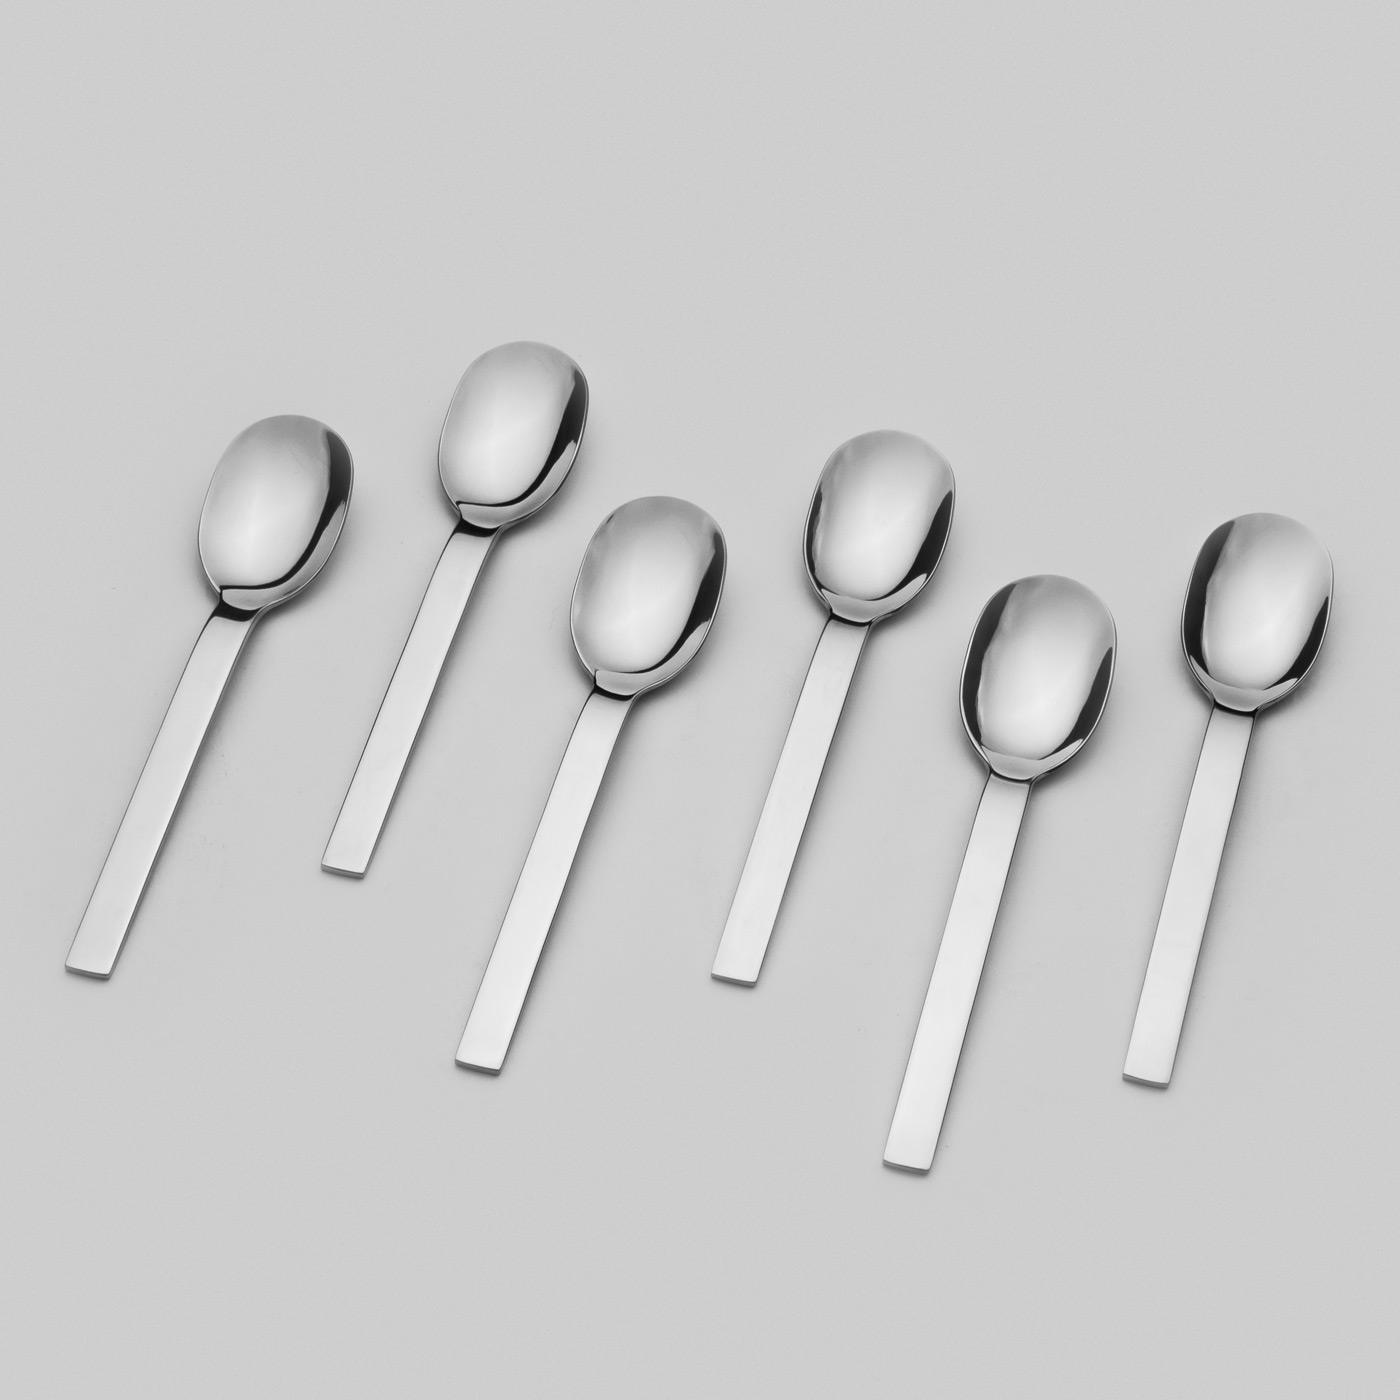 conjunto de 6 cucharas de postre - conesedesalud